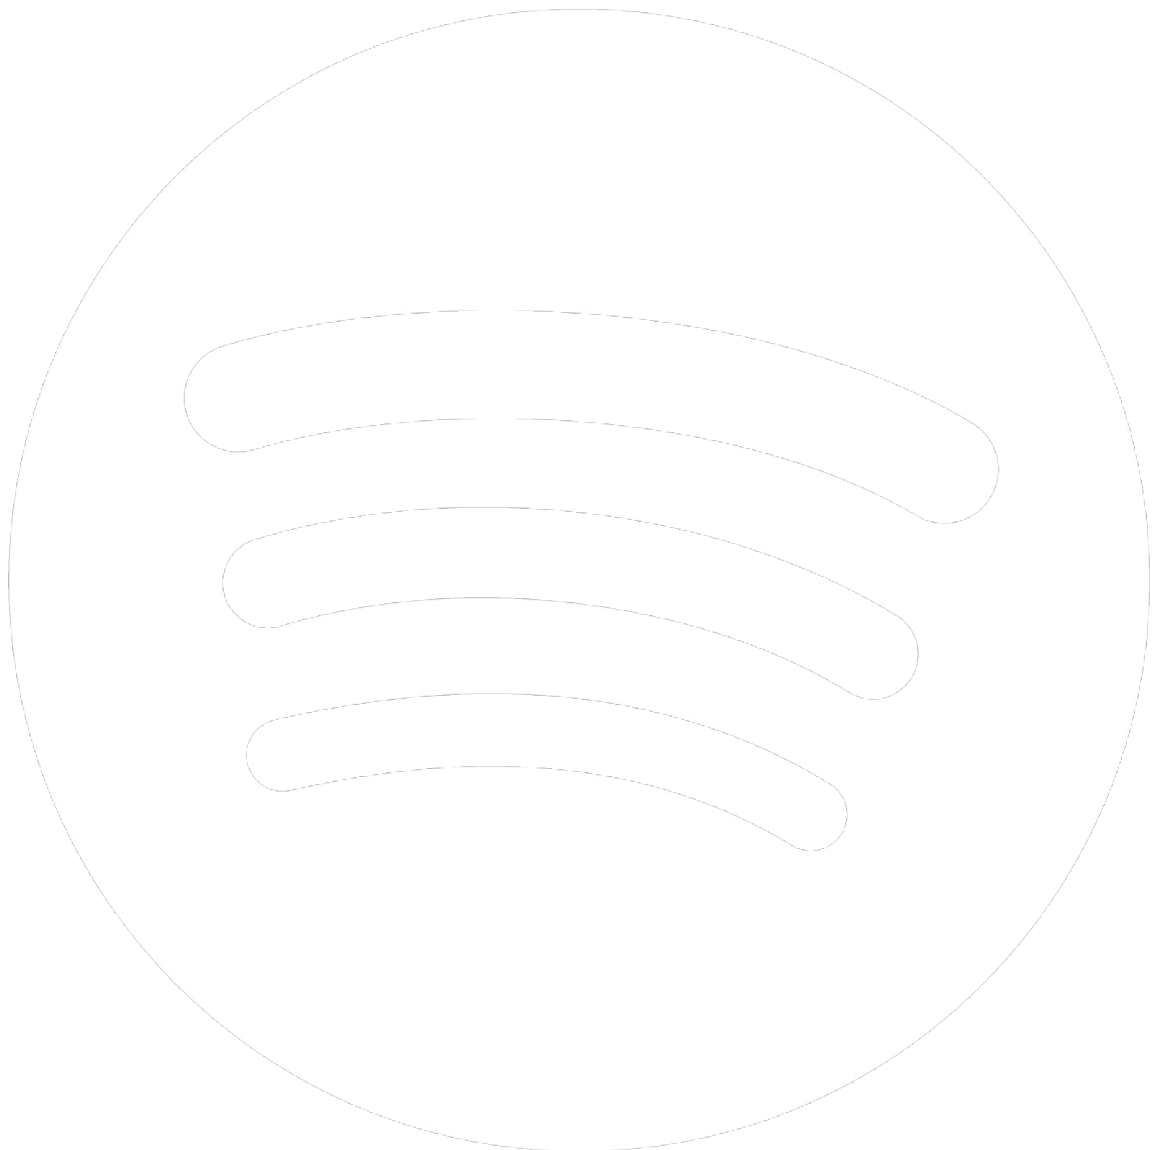 Logotip de Spotify